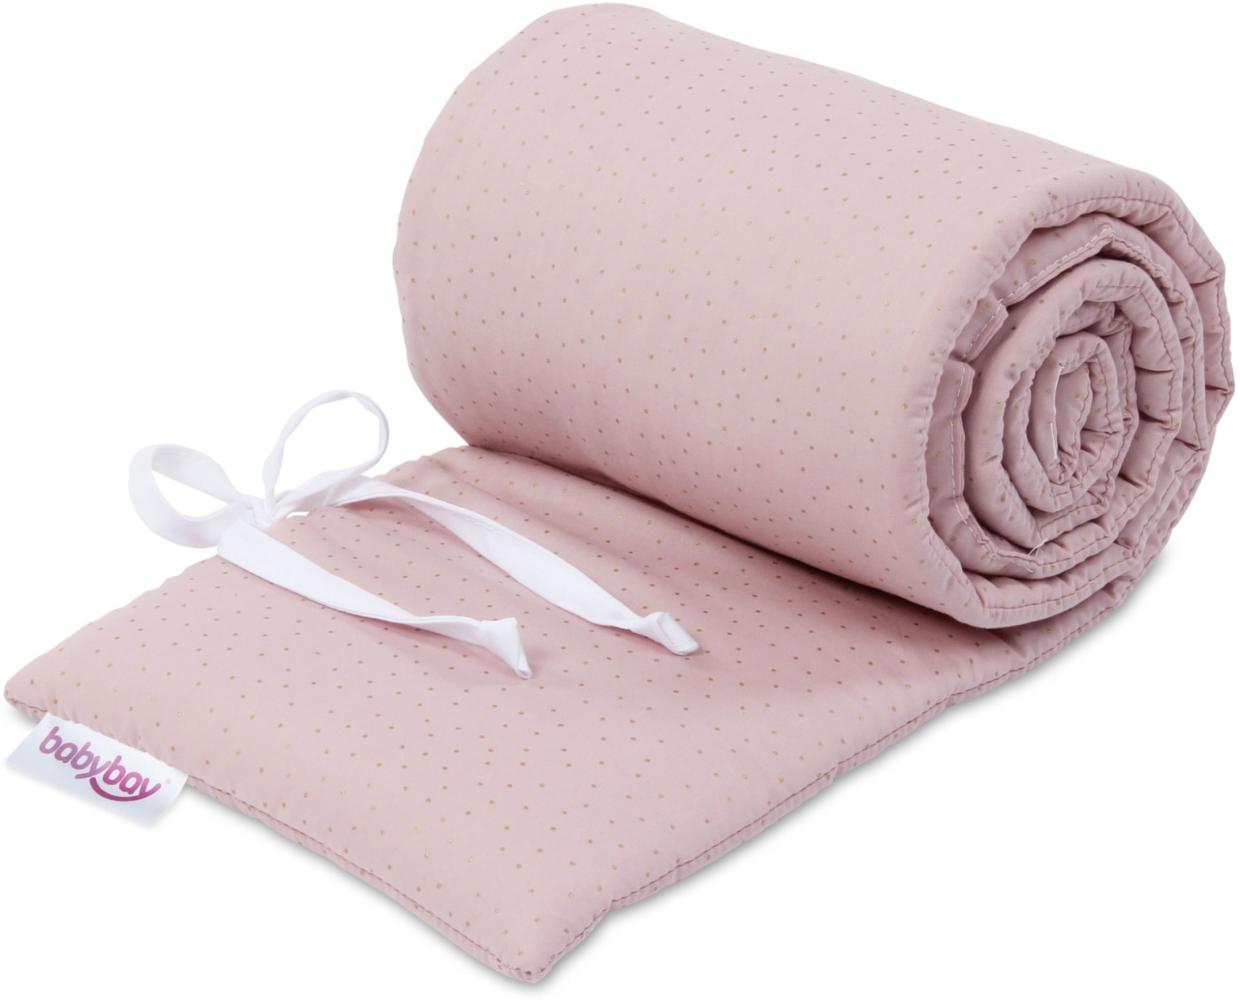 babybay Nestchen Organic Cotton Royal passend für Modell Original, rosé Glitzerpunkte gold Bild 1